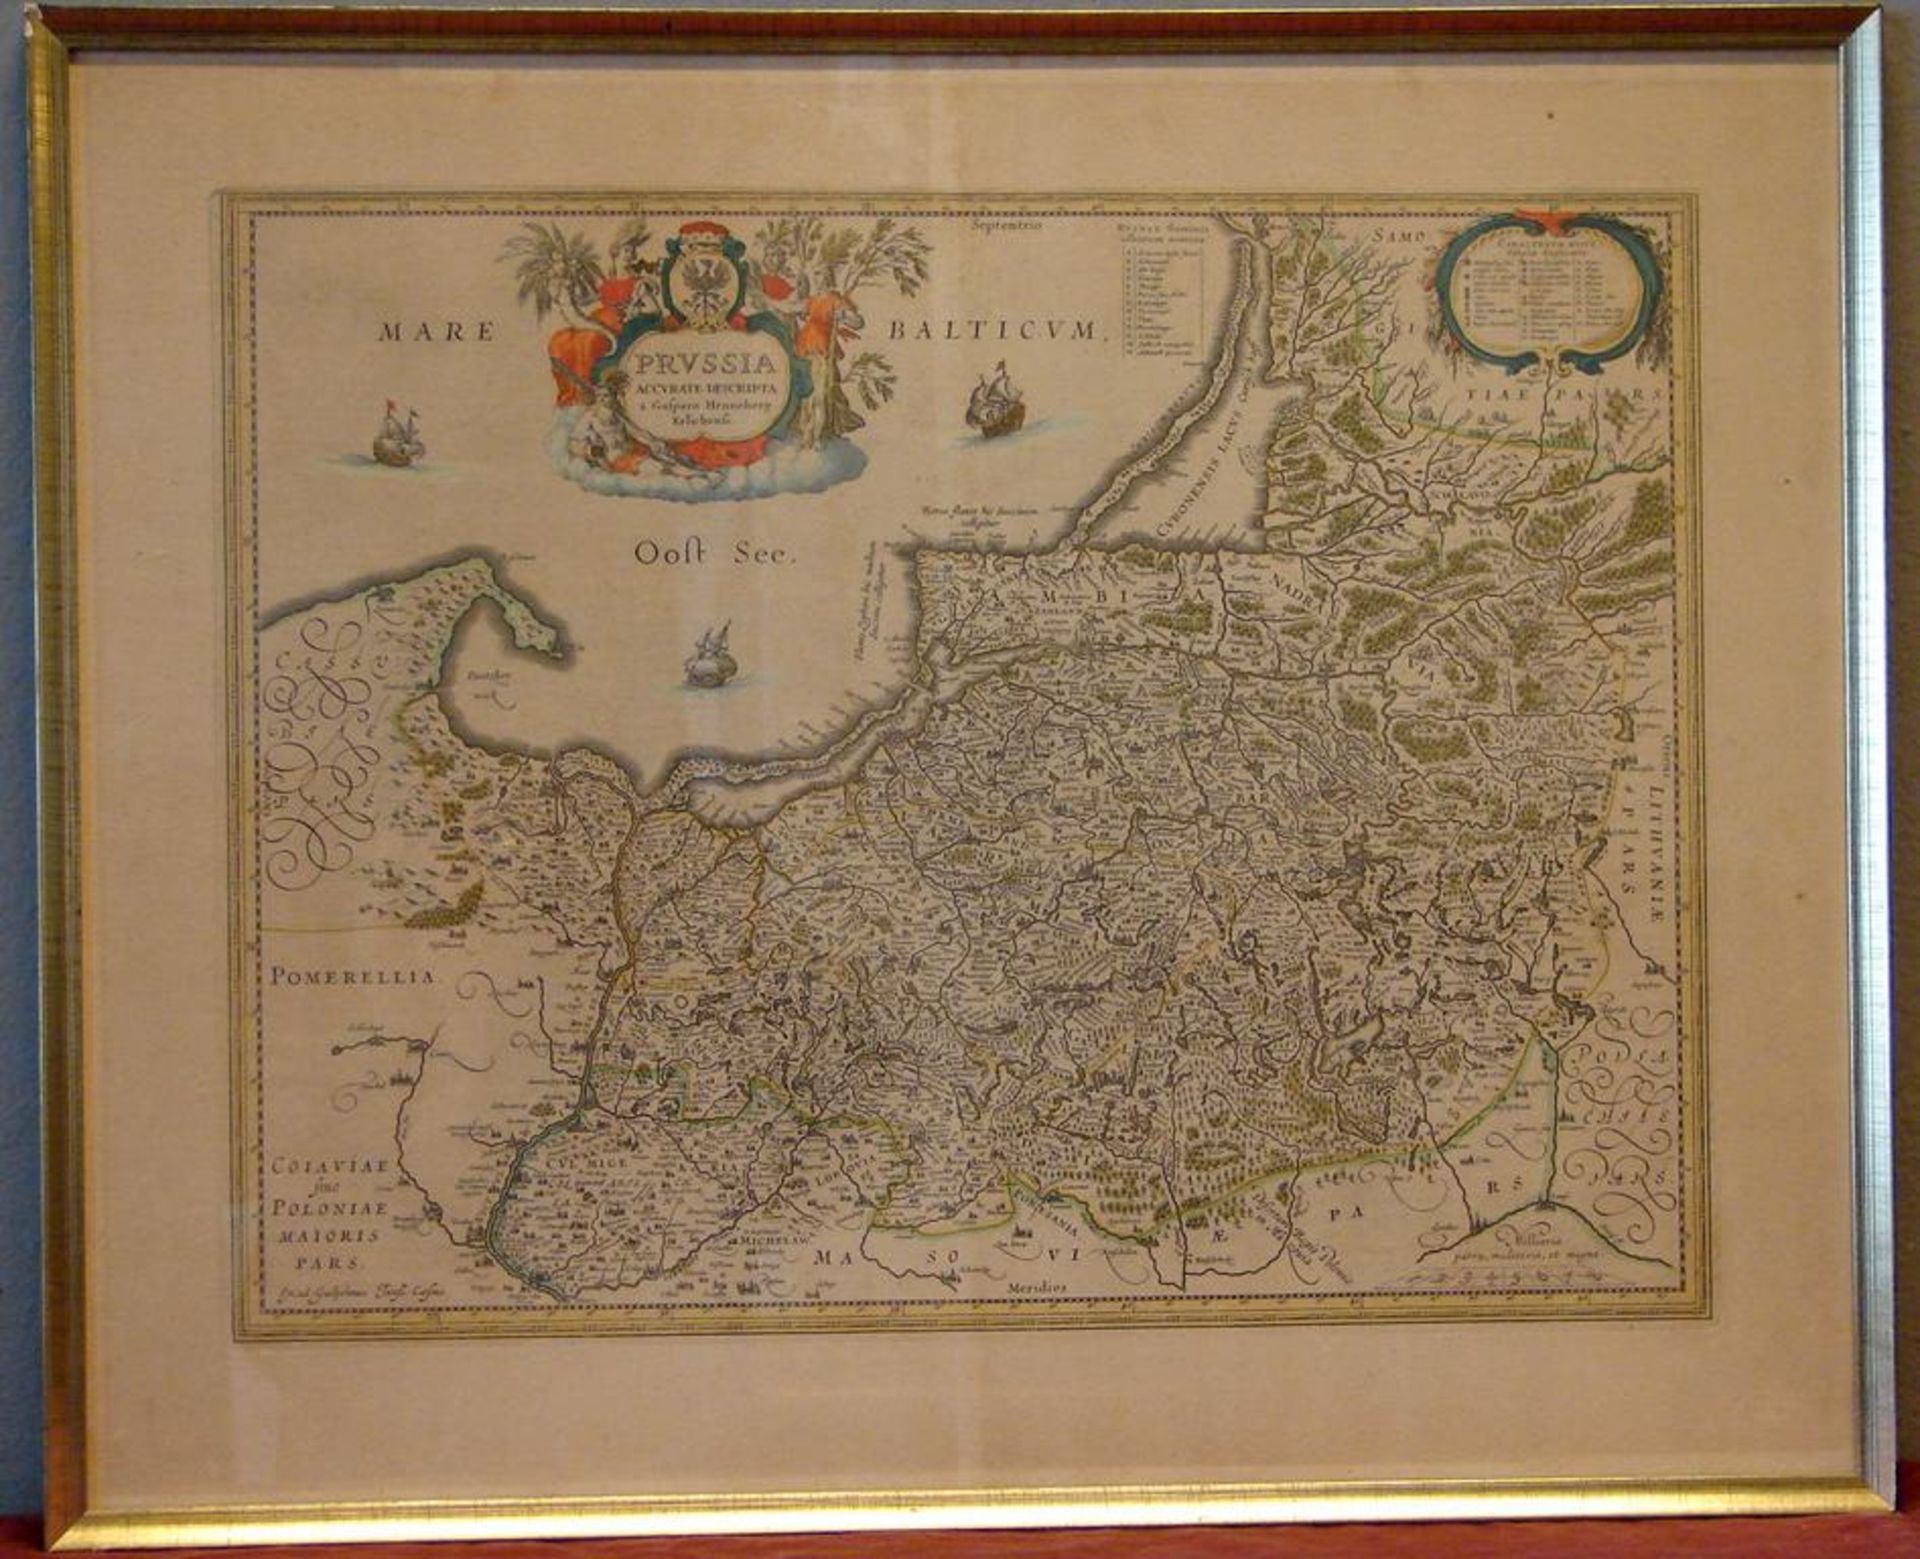 GASPARO HENNEBERG ERLICHENSI, "Mare Balticum, Pressia Ostsee", Kupferstich,coloriert, Plattengröße